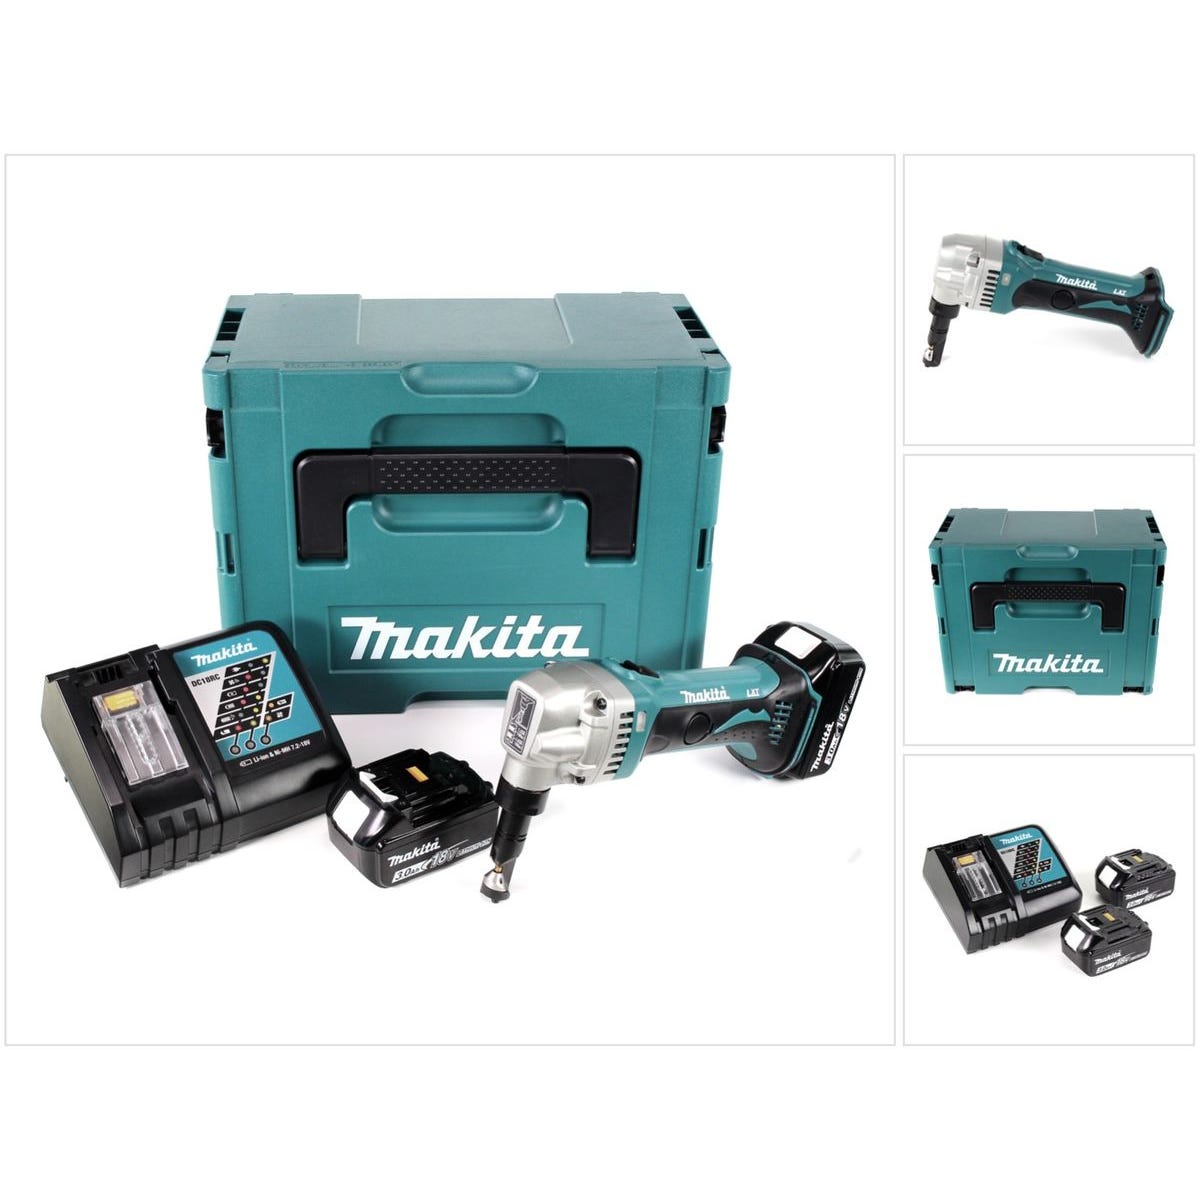 Makita DJN 161 RFJ 18 V Grignoteuse sans fil + Coffret de transport Makpac + 2x Batteries BL 1830 3,0 Ah + Chargeur DC 18 RC 0